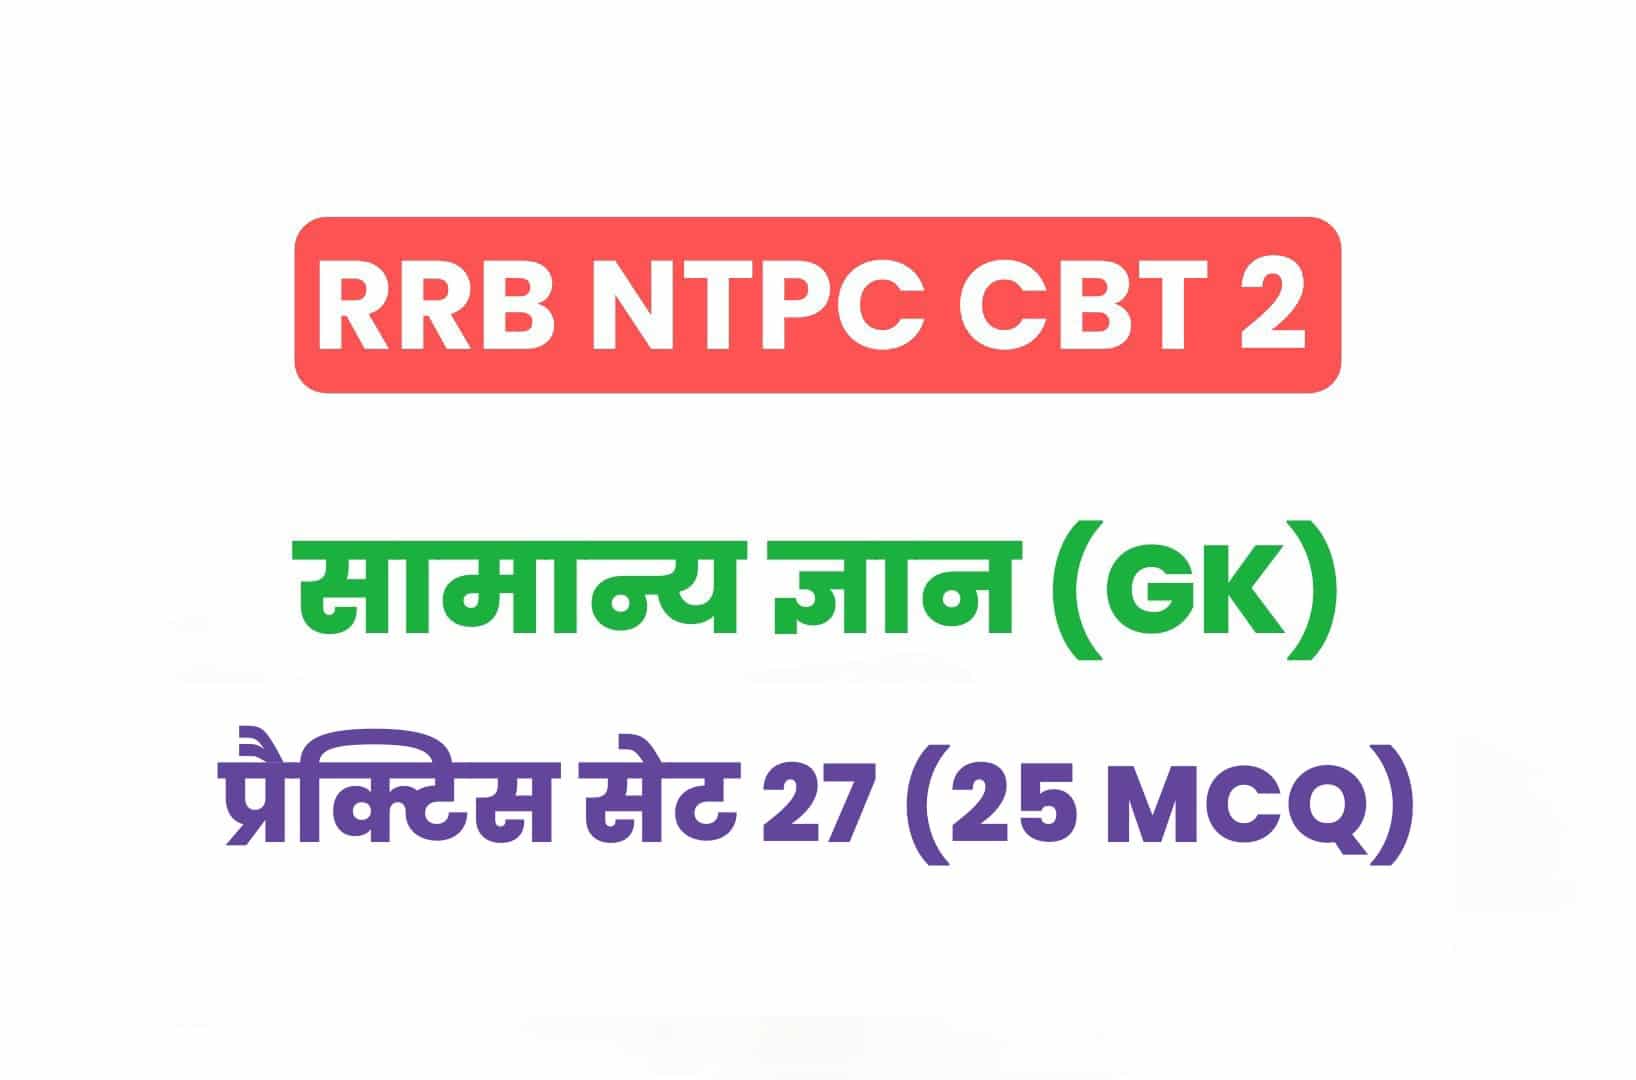 RRB NTPC CBT 2 GK प्रैक्टिस सेट 27: परीक्षा में पूछे गये सामान्य ज्ञान के 25 महत्वपूर्ण MCQ, देखें